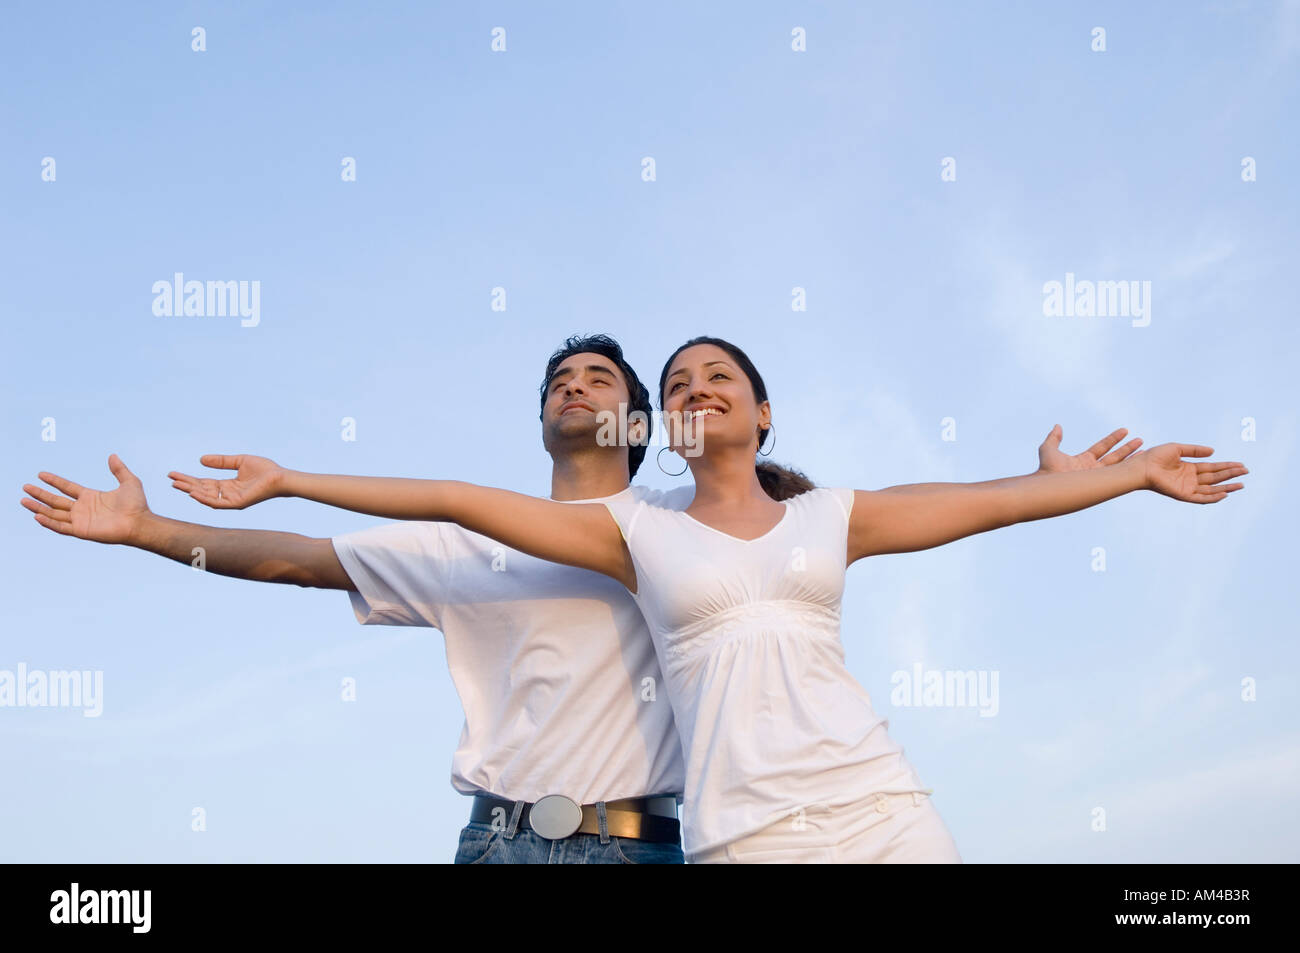 Low angle view of a young couple avec leurs bras tendus et souriant Banque D'Images